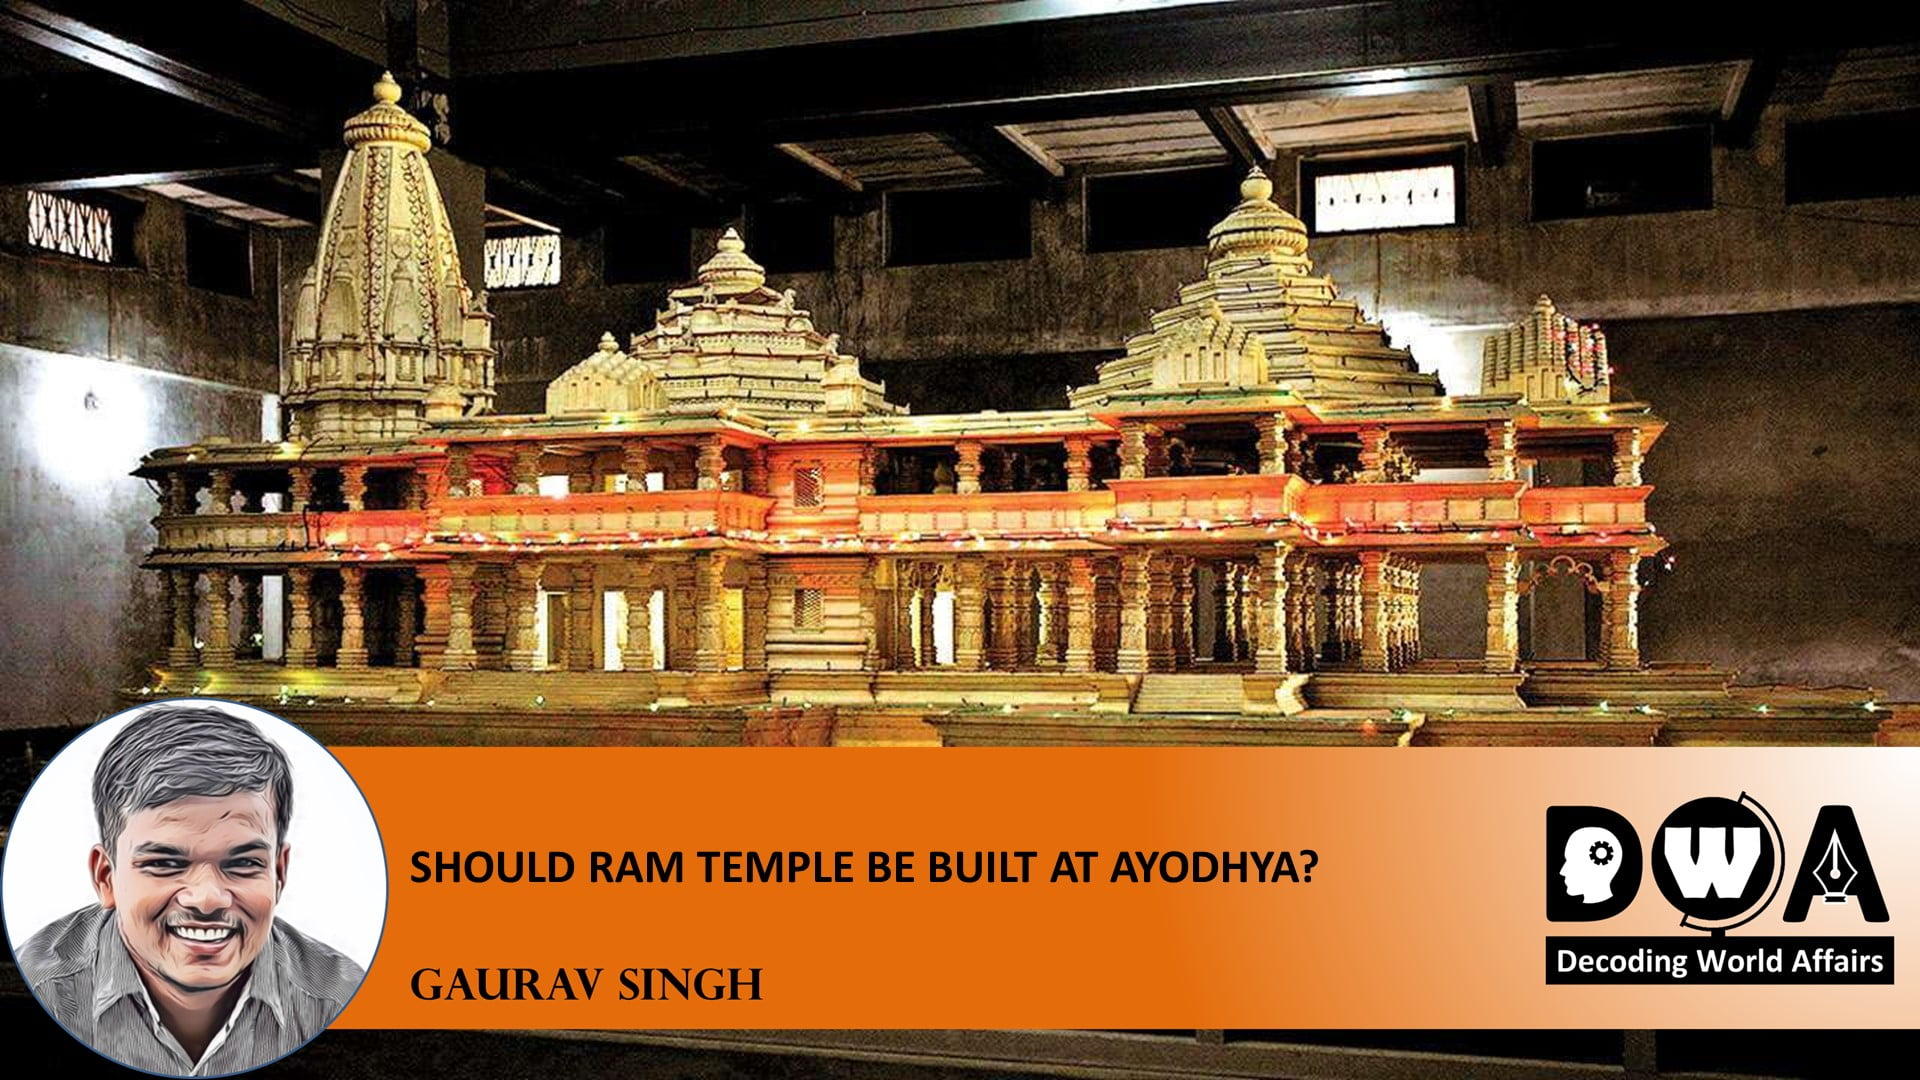 Ram temple in India